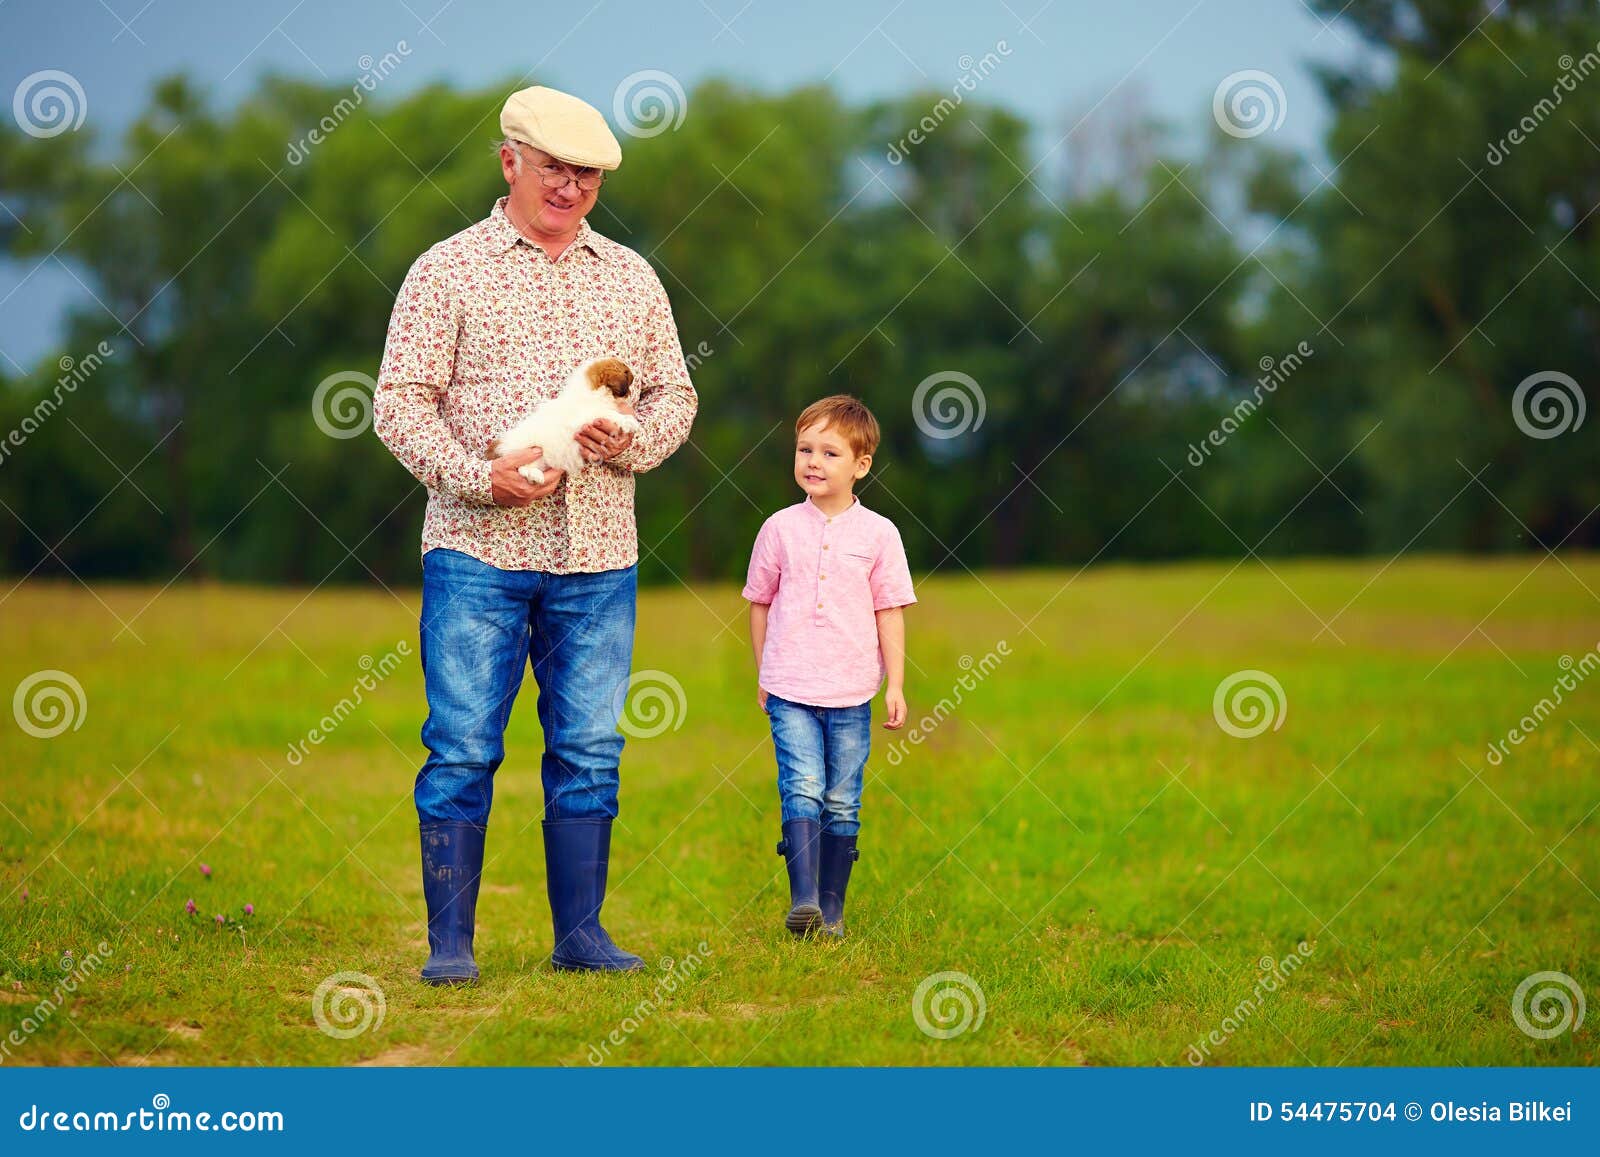 Дед пришел к внуку. Дед с внуком в поле. Тень дедушки и внука идущих по парку. Дед с внуком гуляют по мирам. Дед с внуком идут по дорожке.